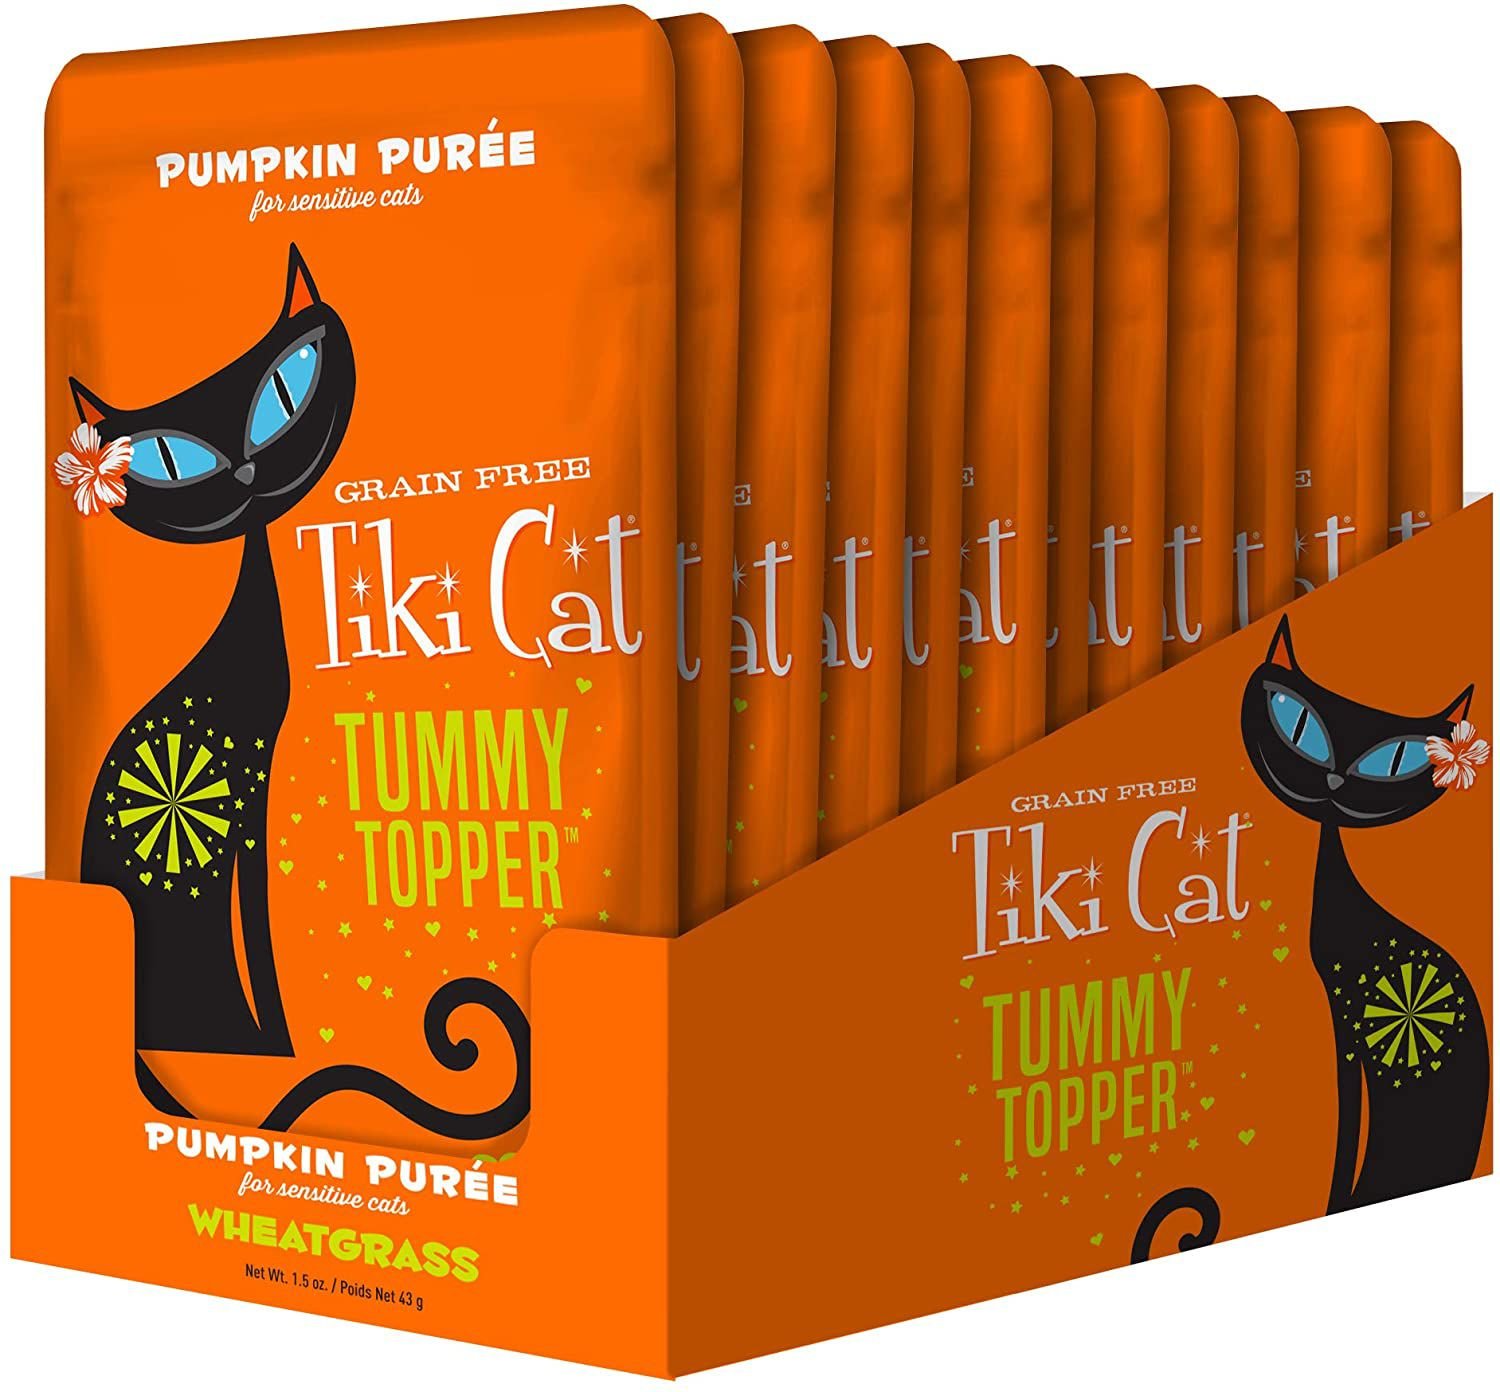 TIKI CAT Tummy Topper Pumpkin Puree Wheatgrass GrainFree Wet Cat Food